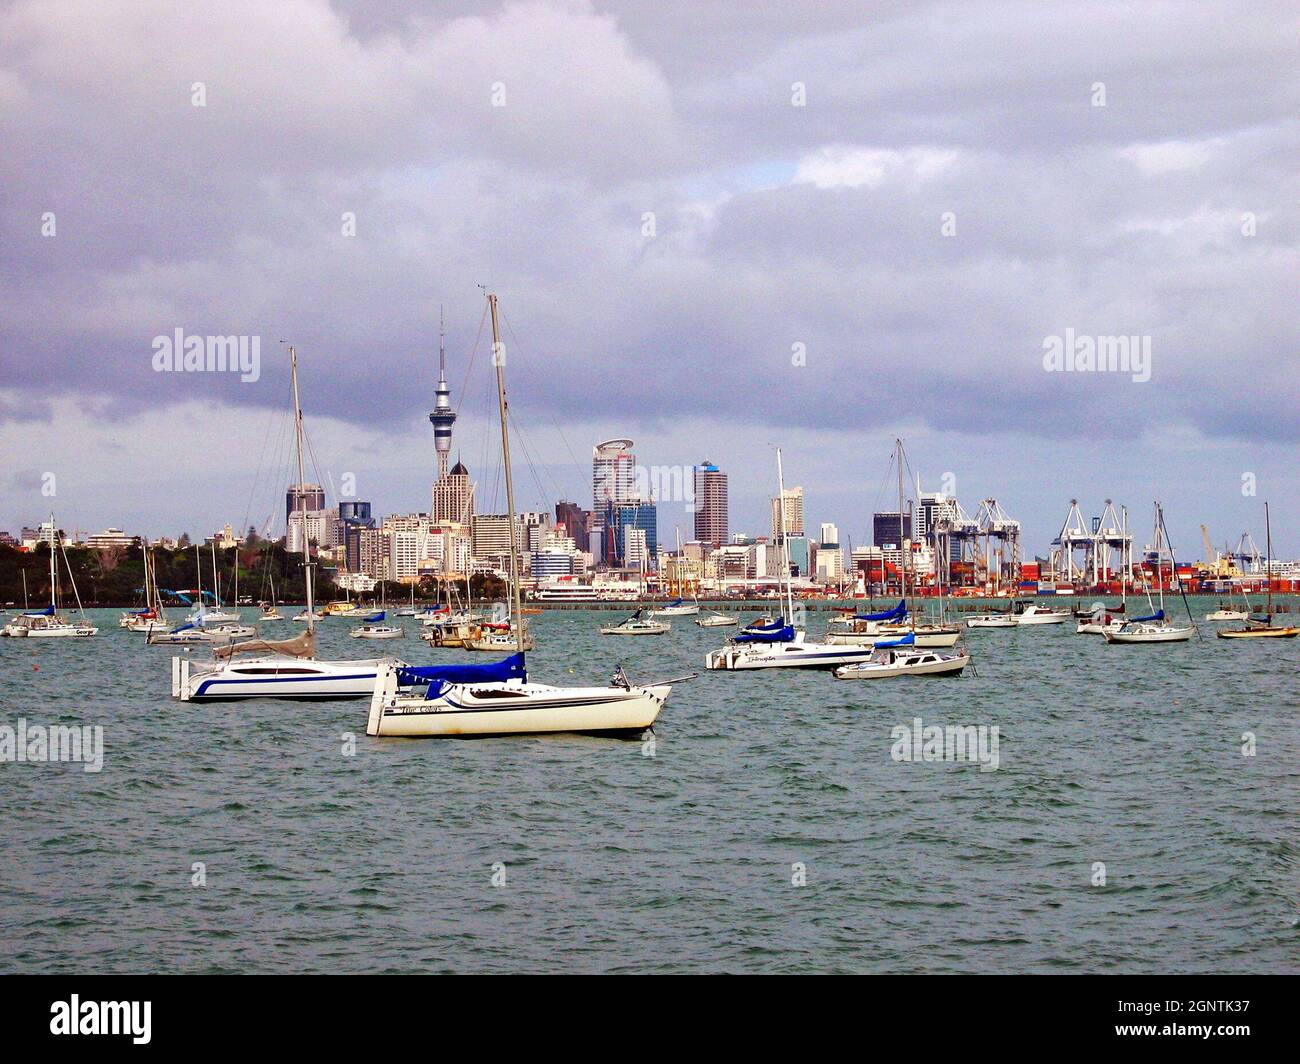 Un jour d'octobre couvert à Auckland, en Nouvelle-Zélande, avec l'horizon en arrière-plan et des voiliers sur l'eau en premier plan.Le surnom de la ville est la ville de Sails. Banque D'Images